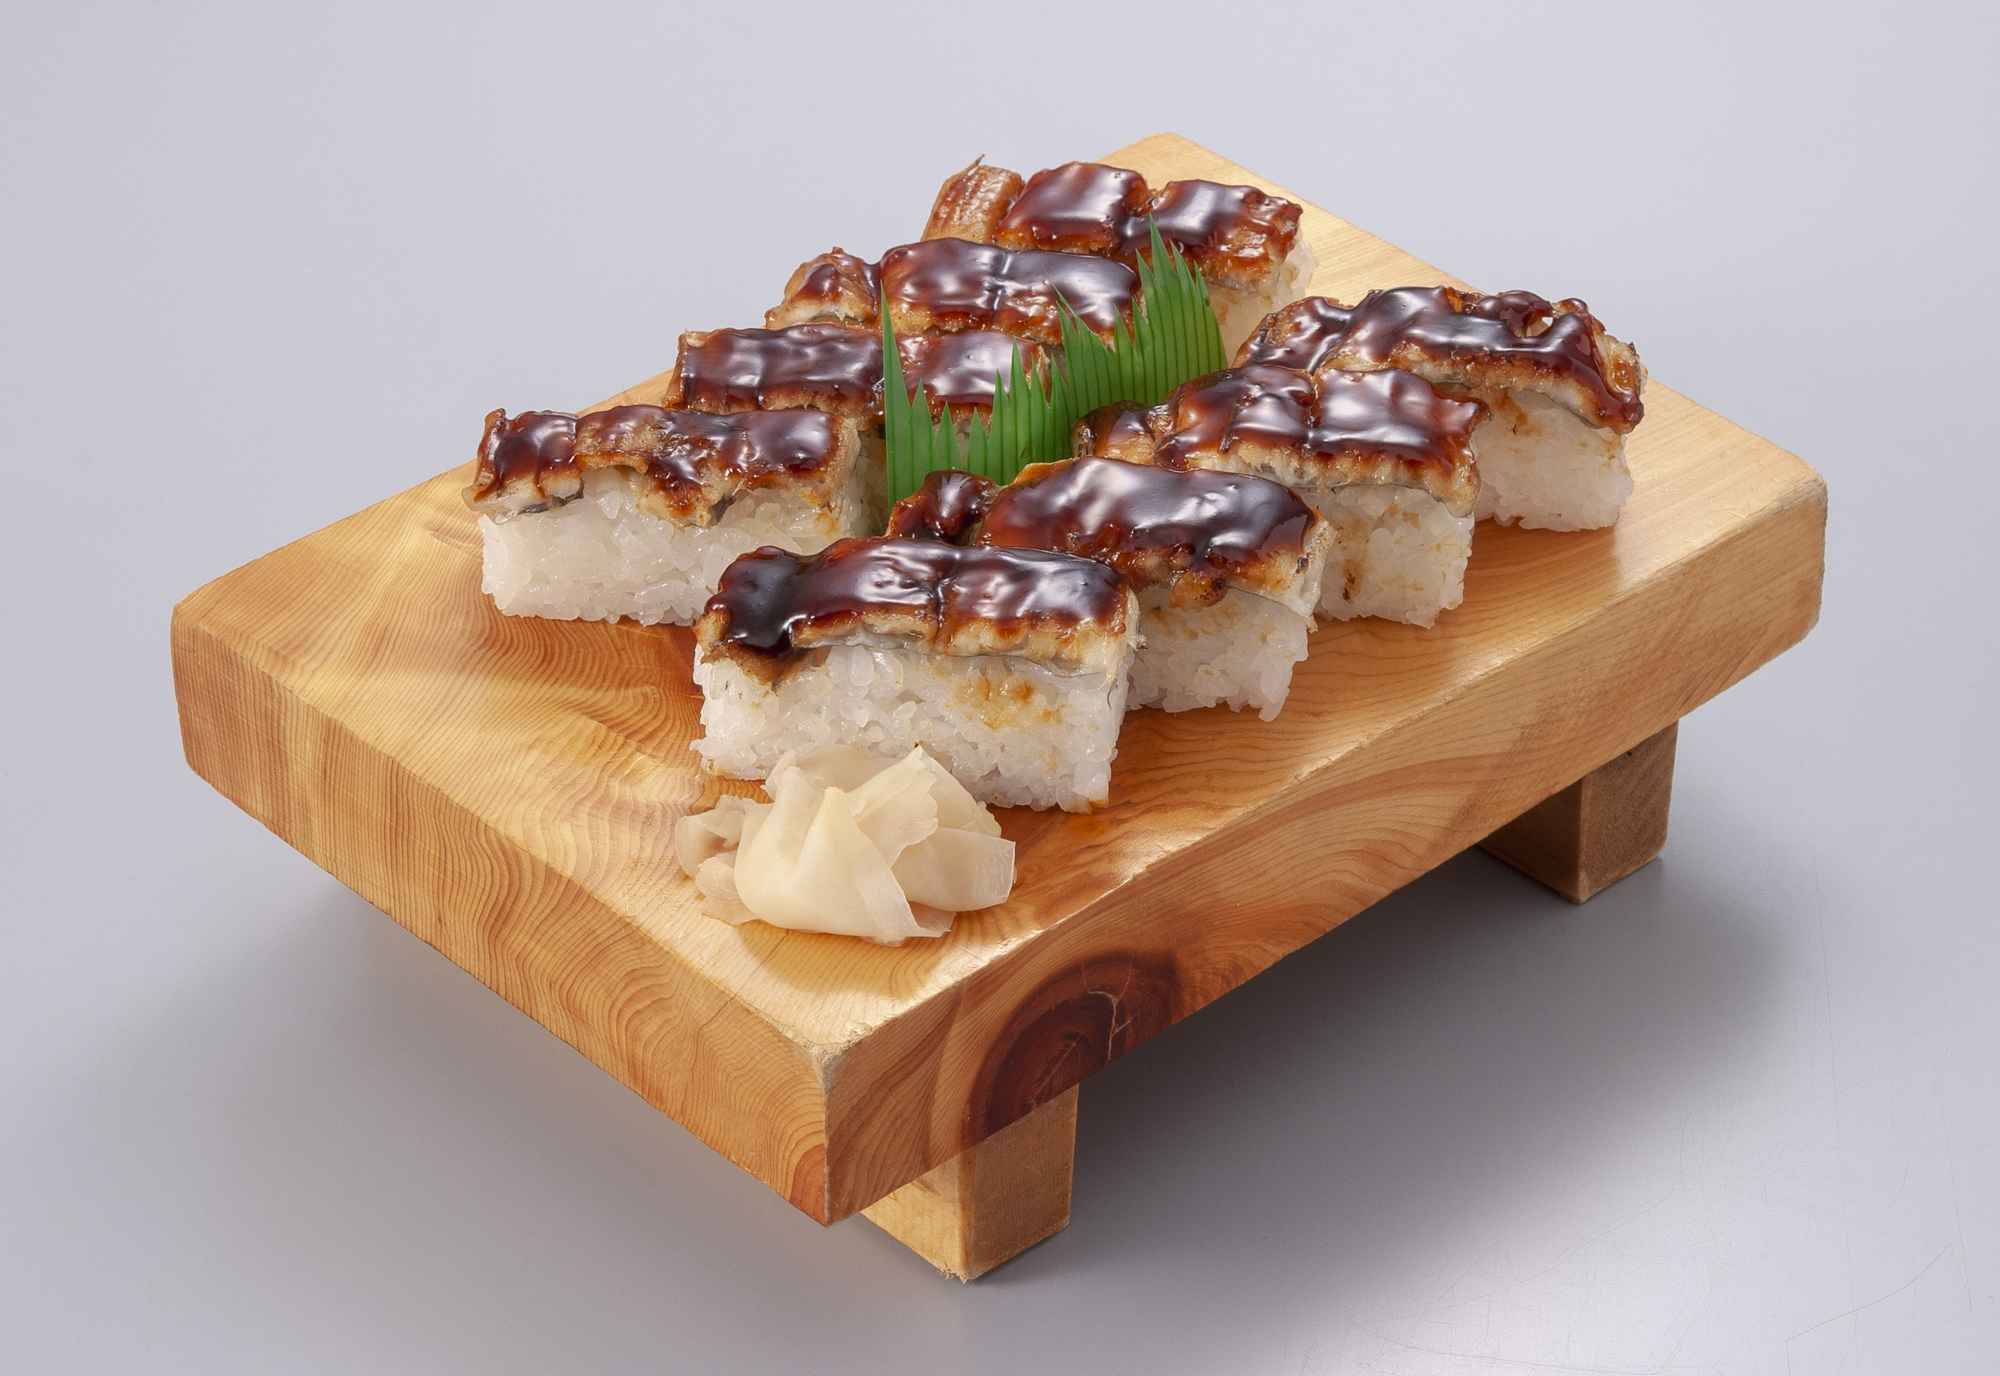 穴子寿司